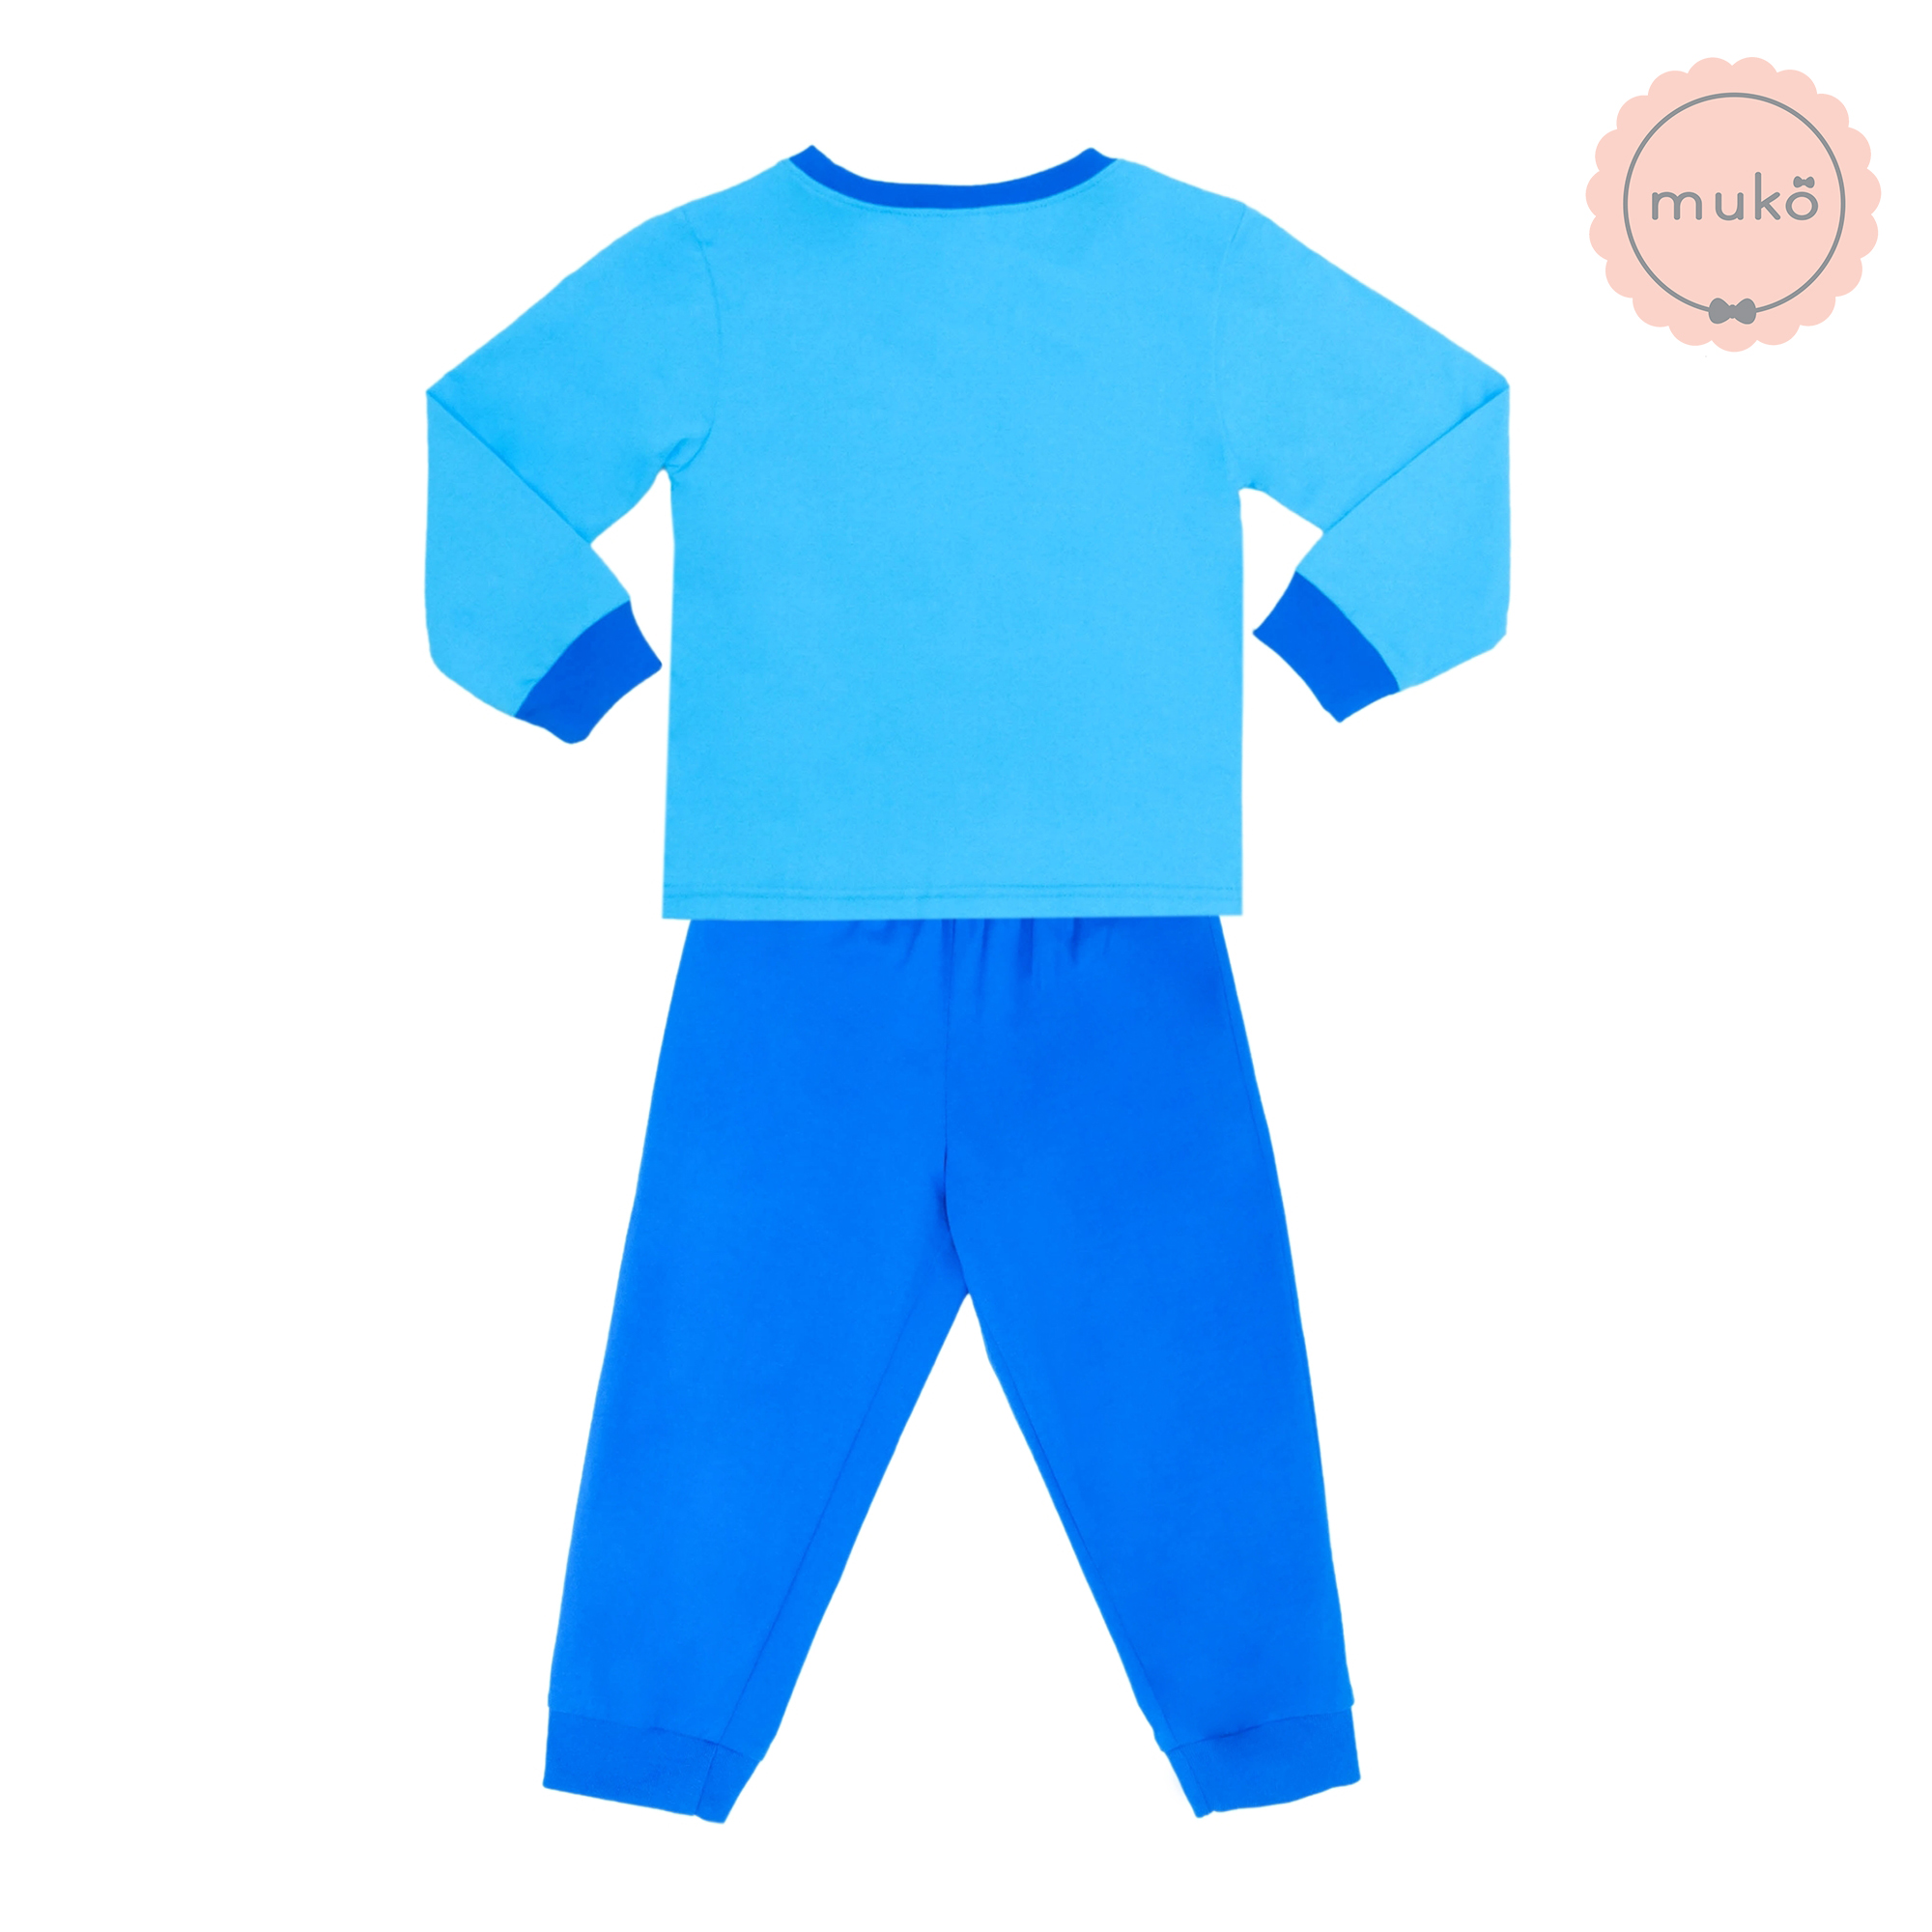 ชุดเด็ก 6 เดือน - 1 ขวบ แขนยาว-ขายาว (Size 1) DMK127-01-3-Blue 1 ลาย มินนี่ Minnie สีฟ้า